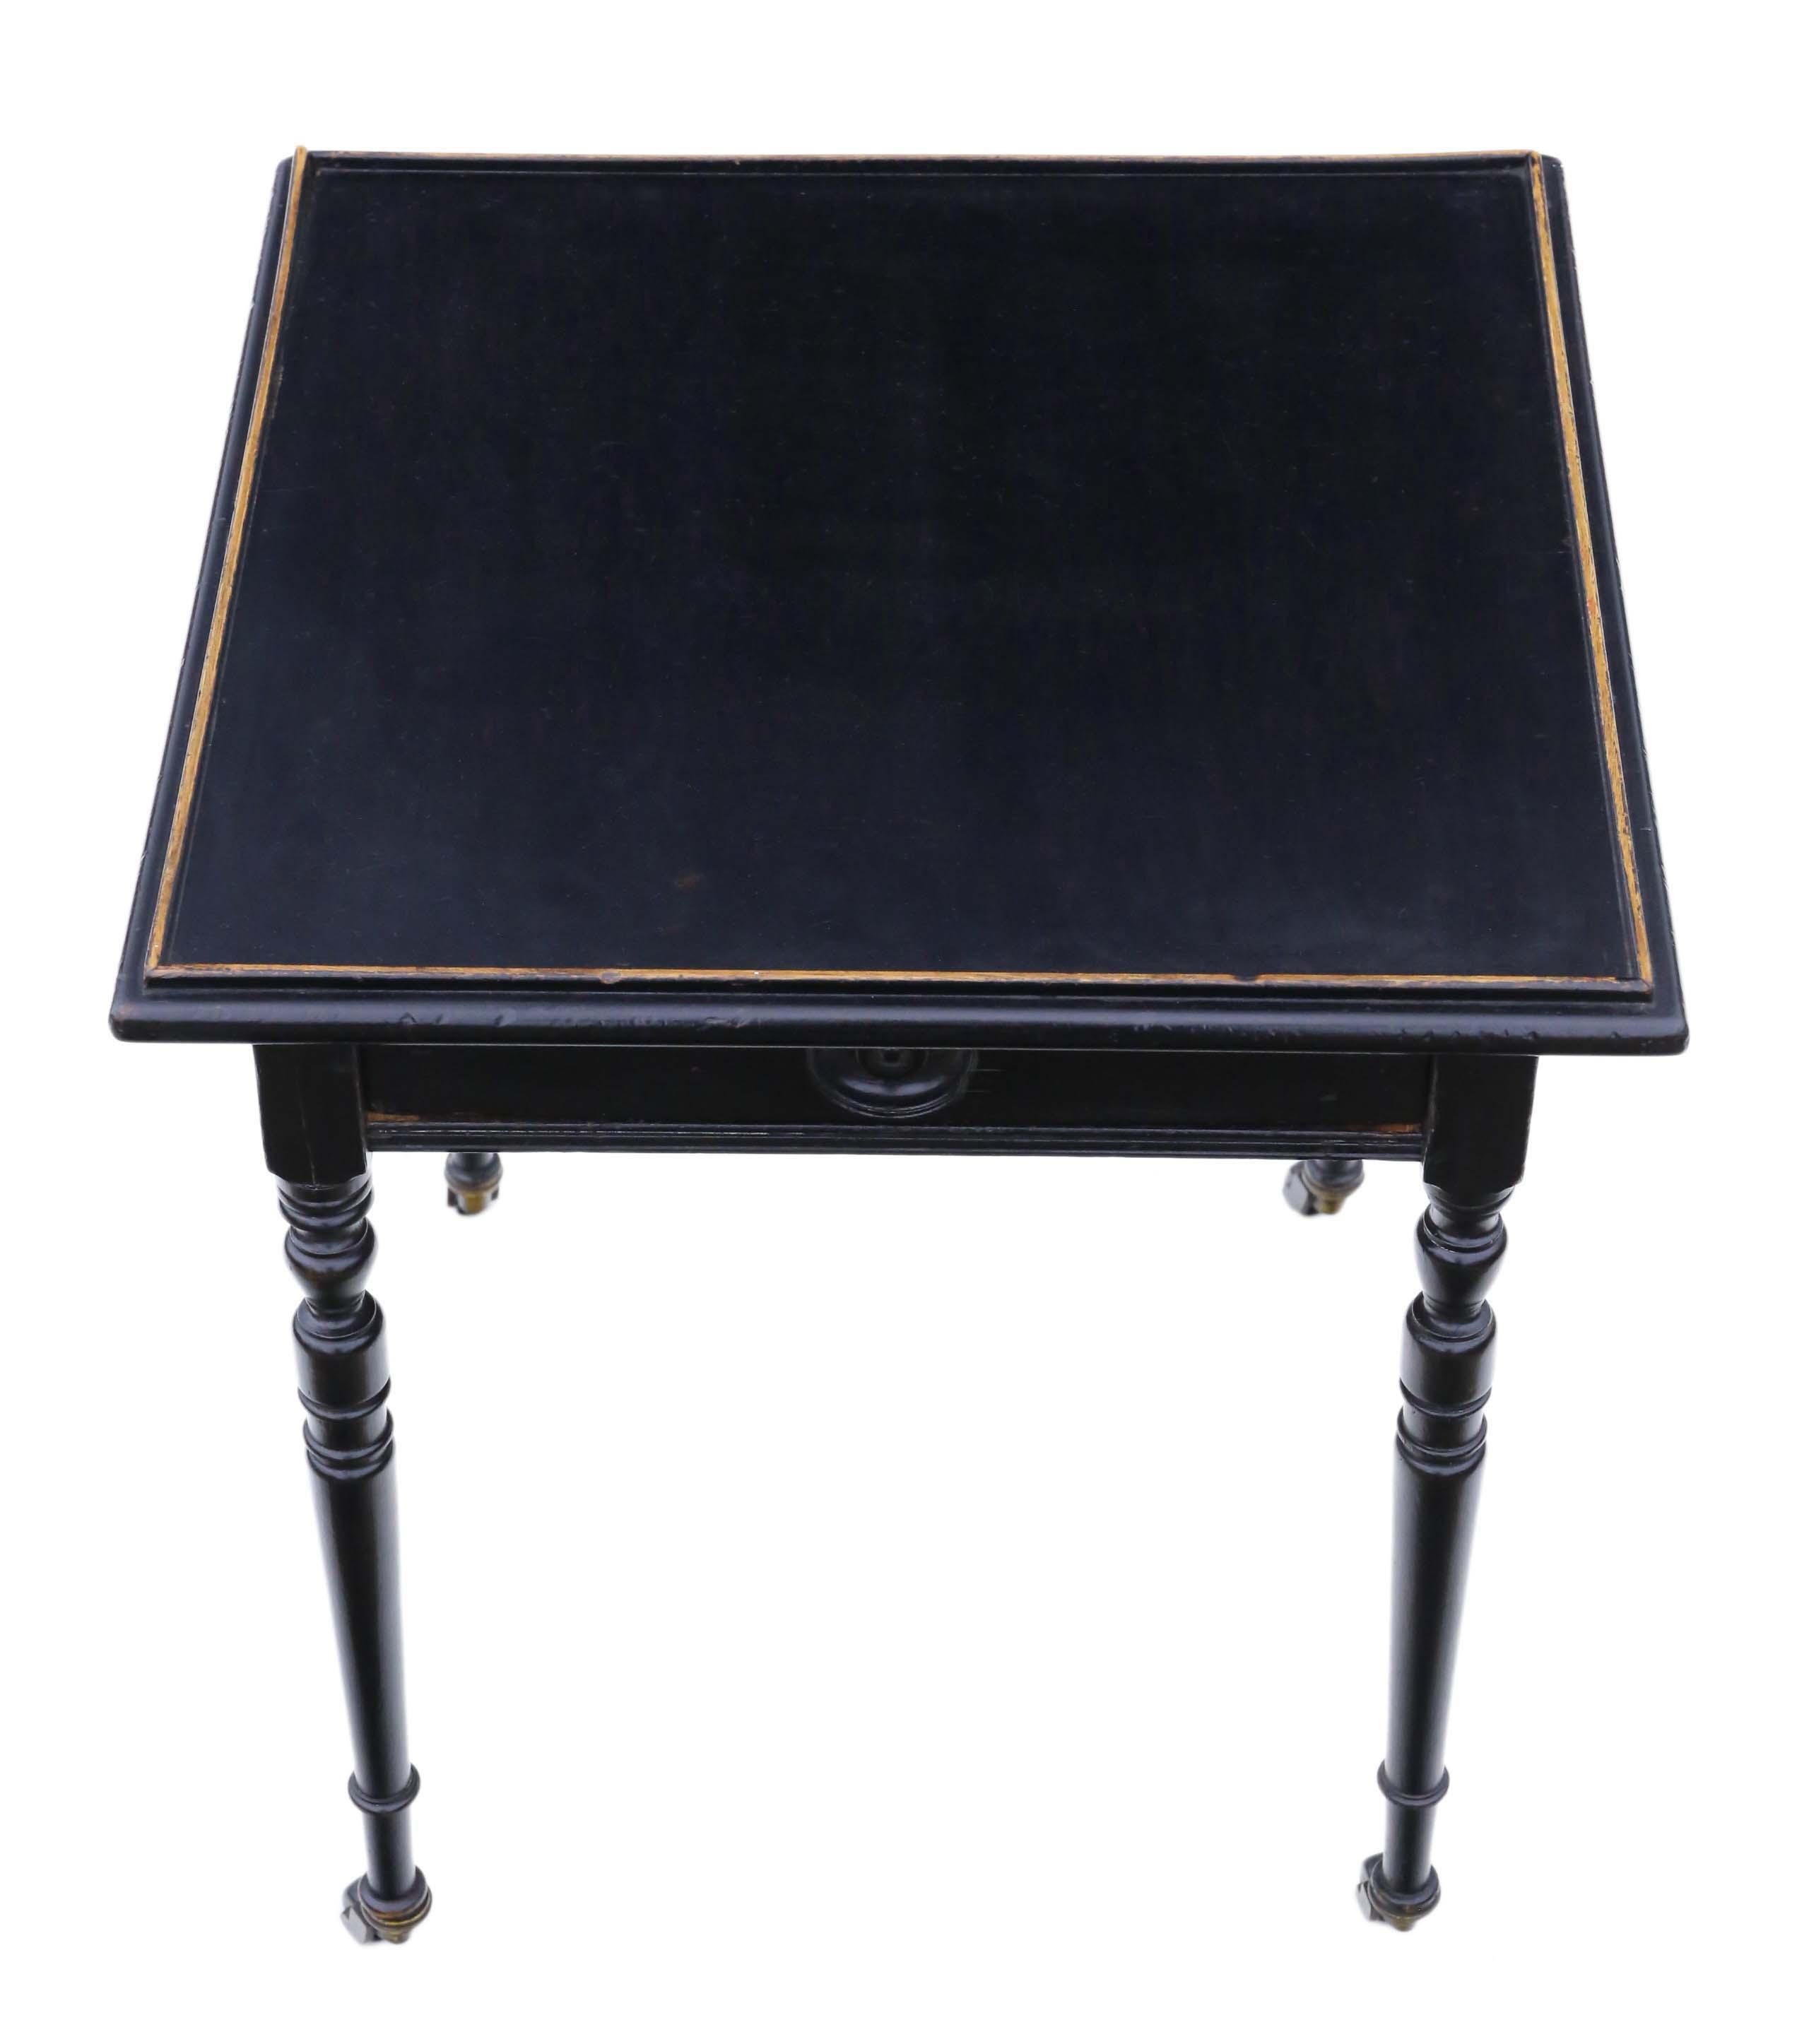 Antiker ebonisierter und vergoldeter Beistell-, Beistell-, Lampen-, Kaffee- oder Weintisch aus der viktorianischen Zeit um 1880.

Gestempelt 'Edwards und Roberts', die berühmte Hersteller sind.

Dies ist ein schöner Tisch, der voller Alter,